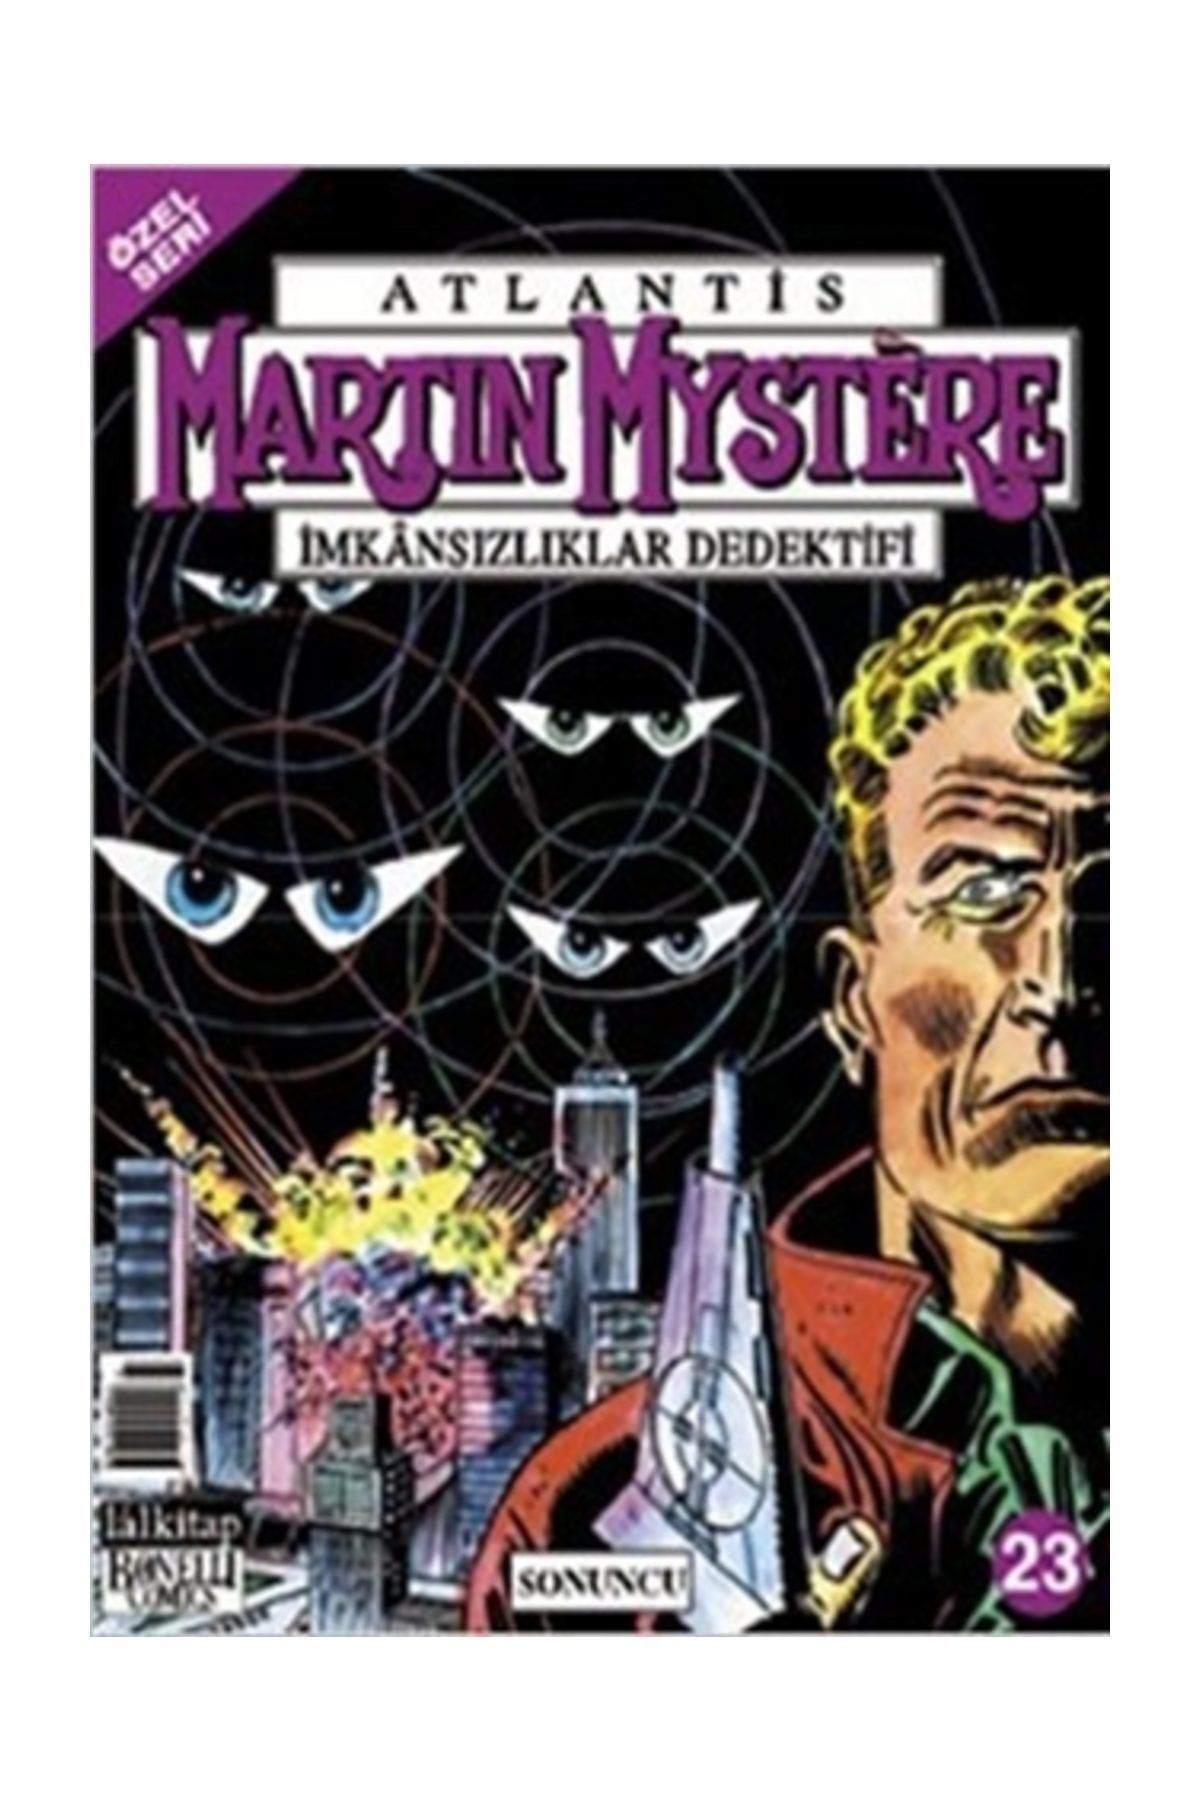 Lal Kitap Atlantis Martin Mystere İmkansızlıklar Dedektifi Sayı: 23 - Sonuncu - Alfredo Castelli